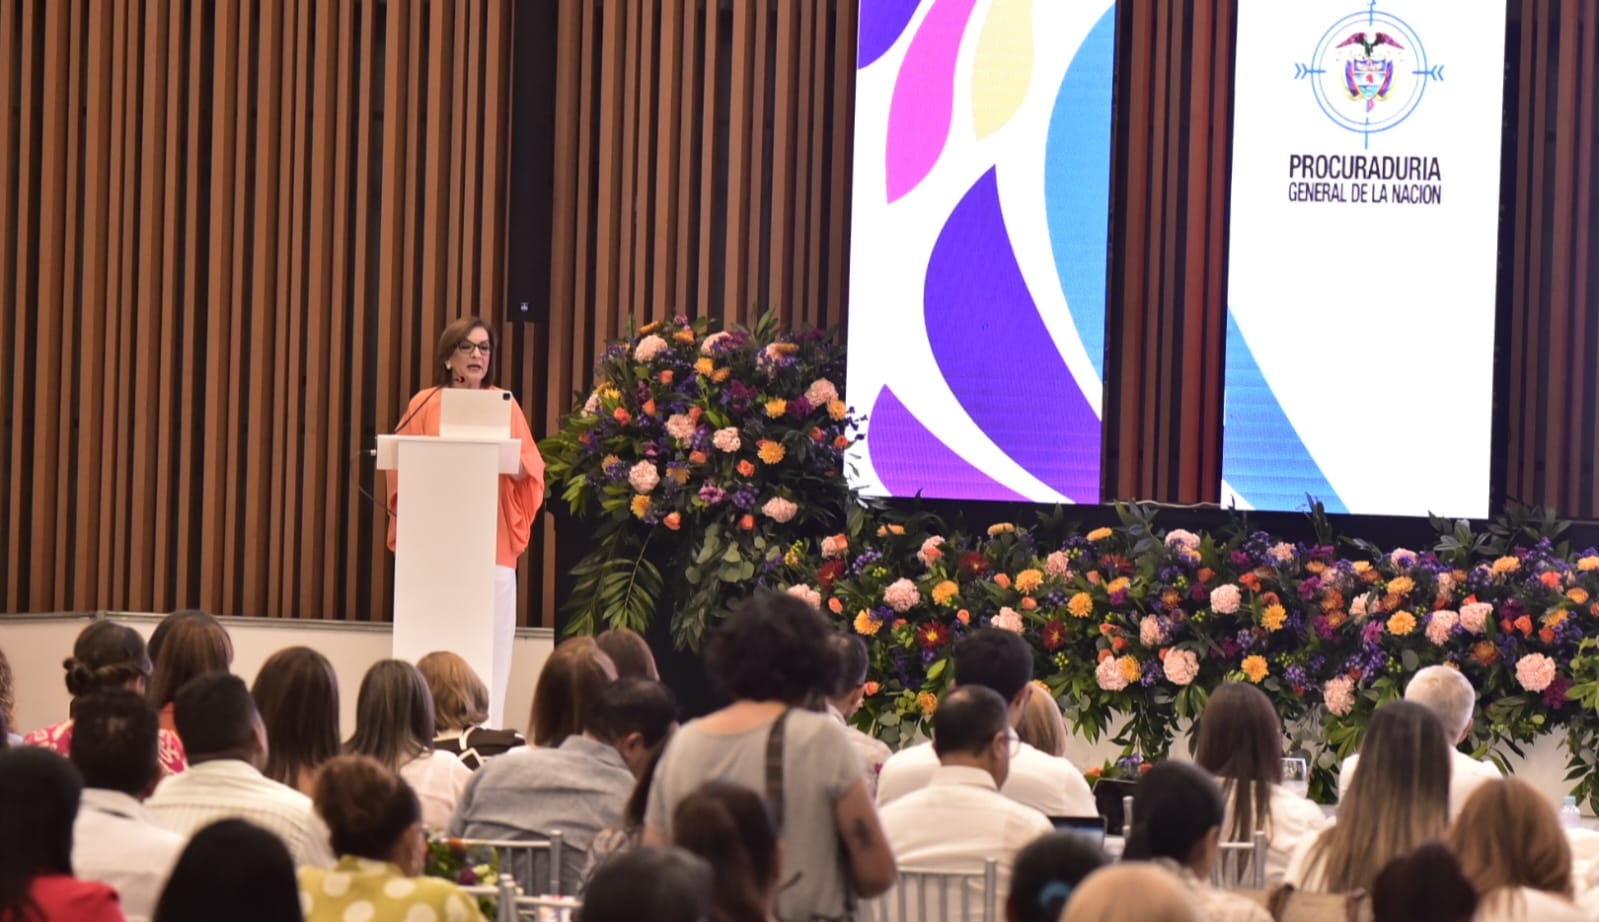 La Procuradora participó Congreso Internacional de Derechos Humanos, Género y Enfoque diferencial en Barranquilla. 